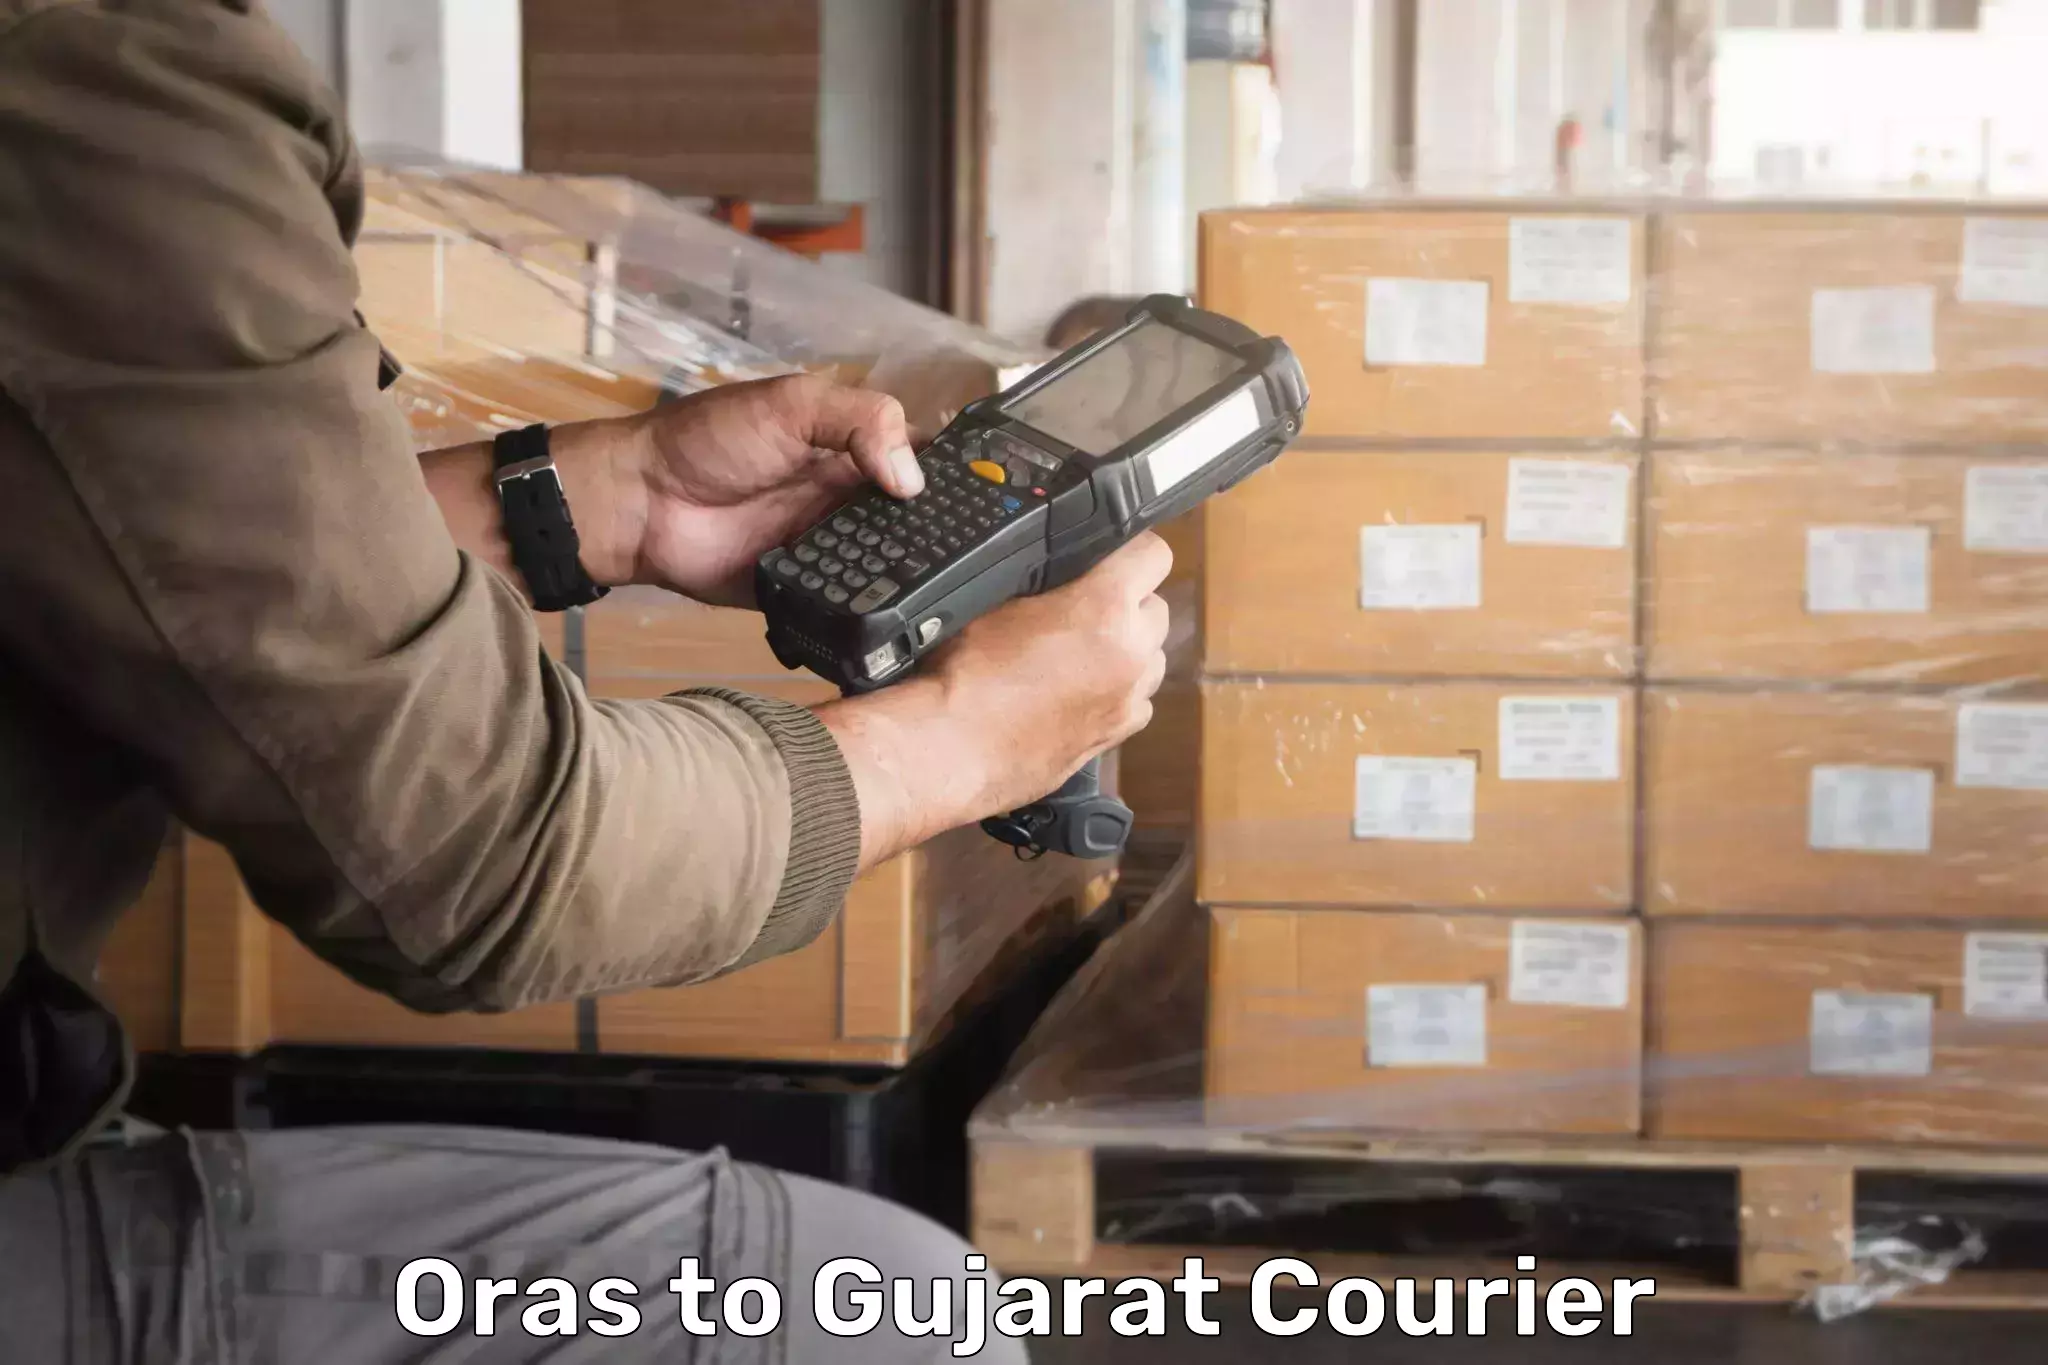 Local delivery service Oras to Gujarat